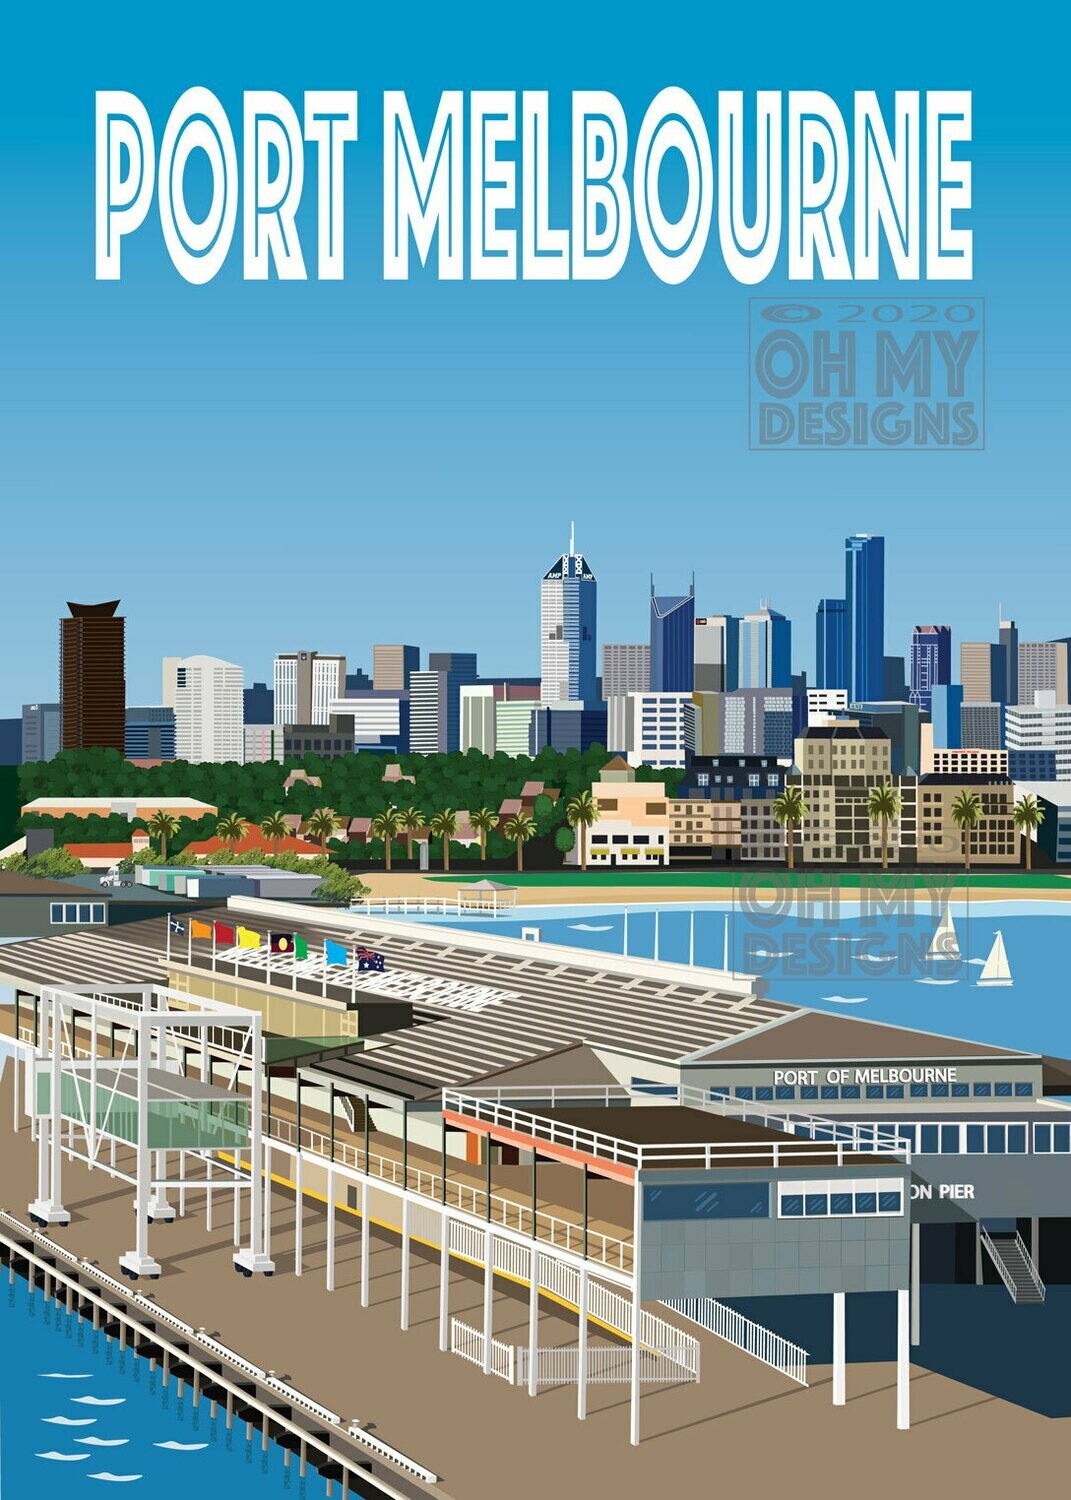 Melbourne - Port Melbourne, Station Pier